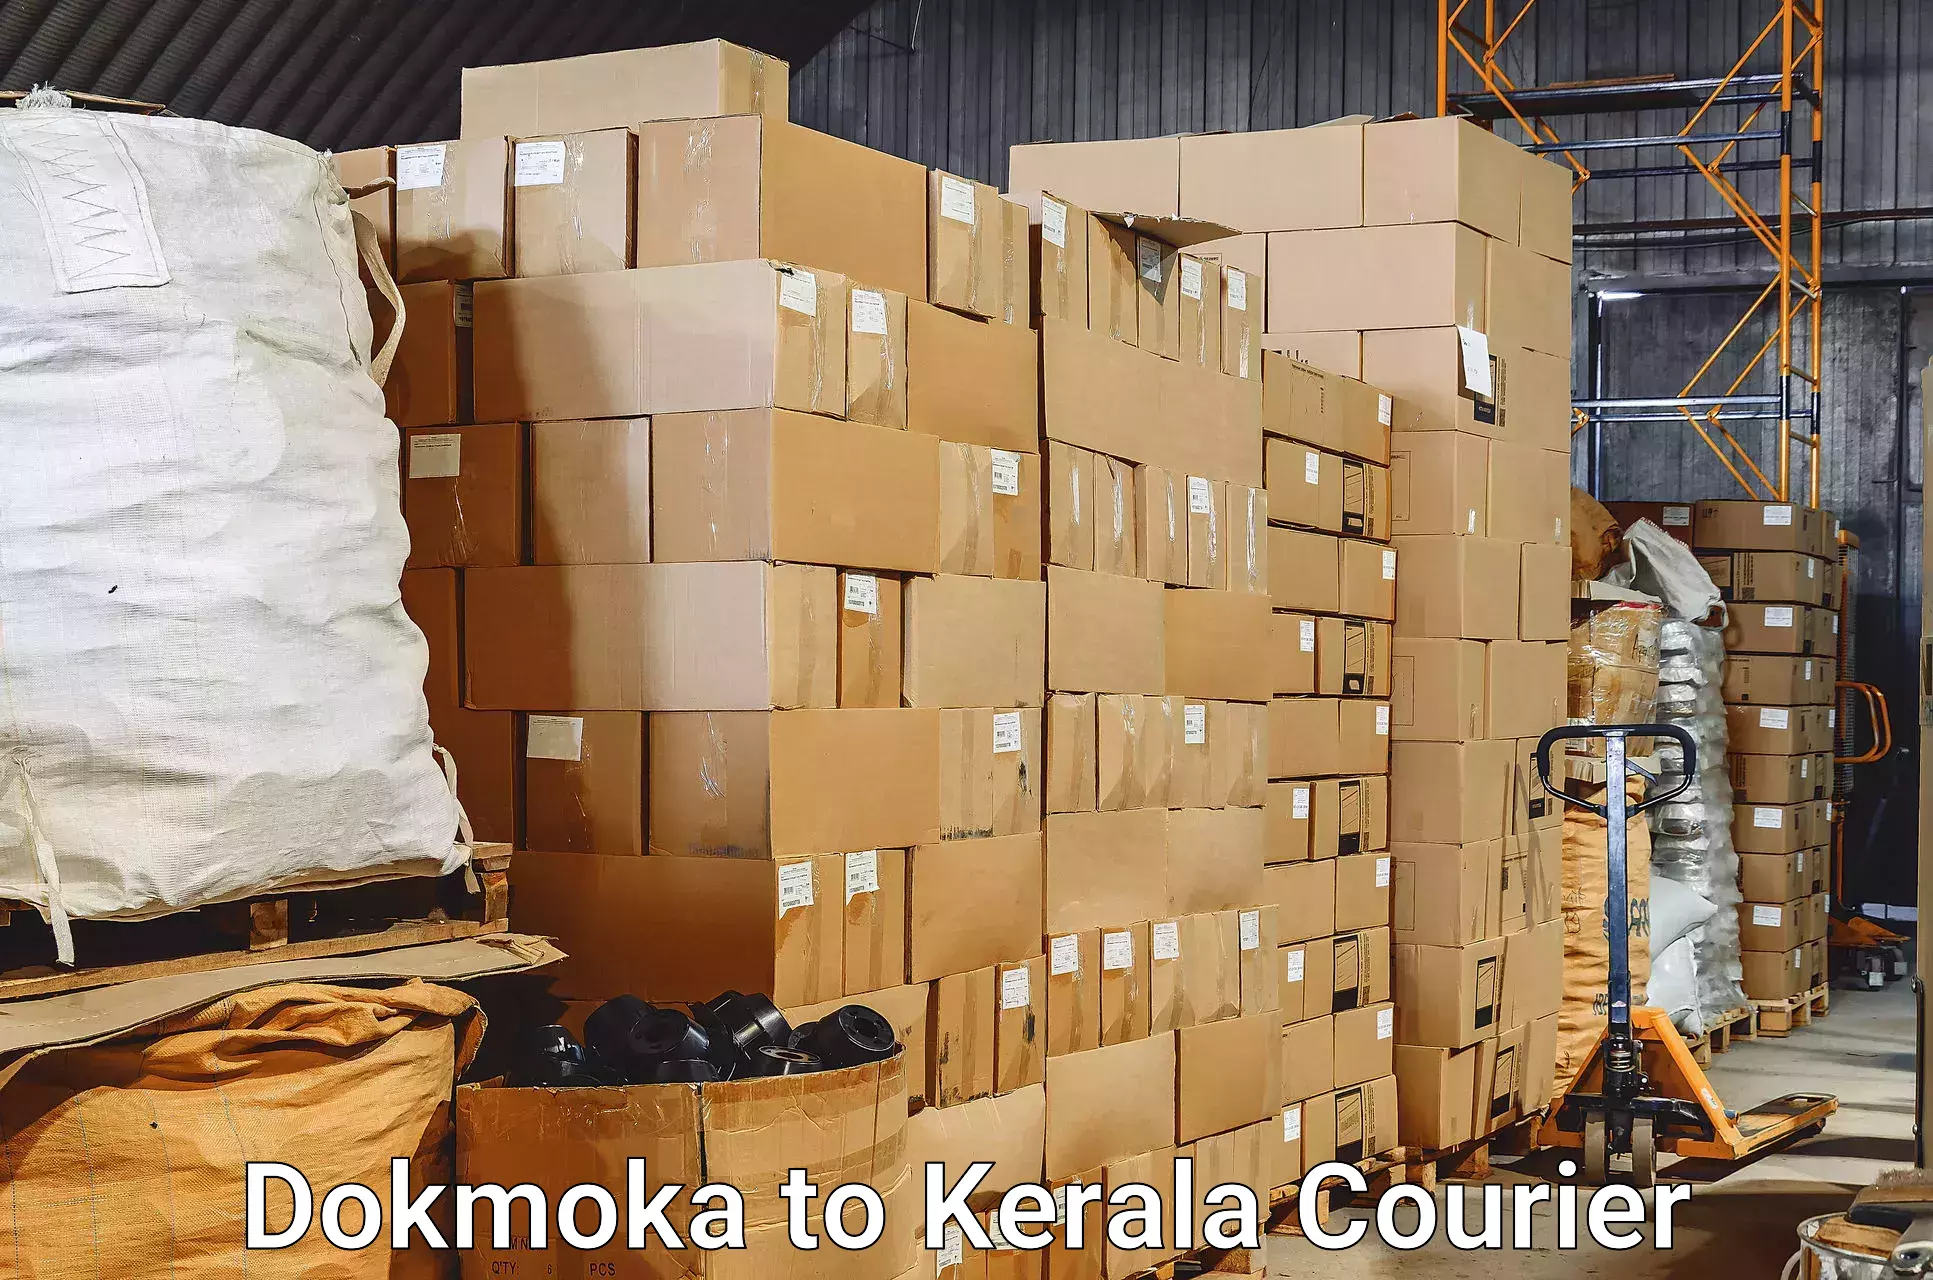 Hassle-free luggage shipping Dokmoka to Attingal